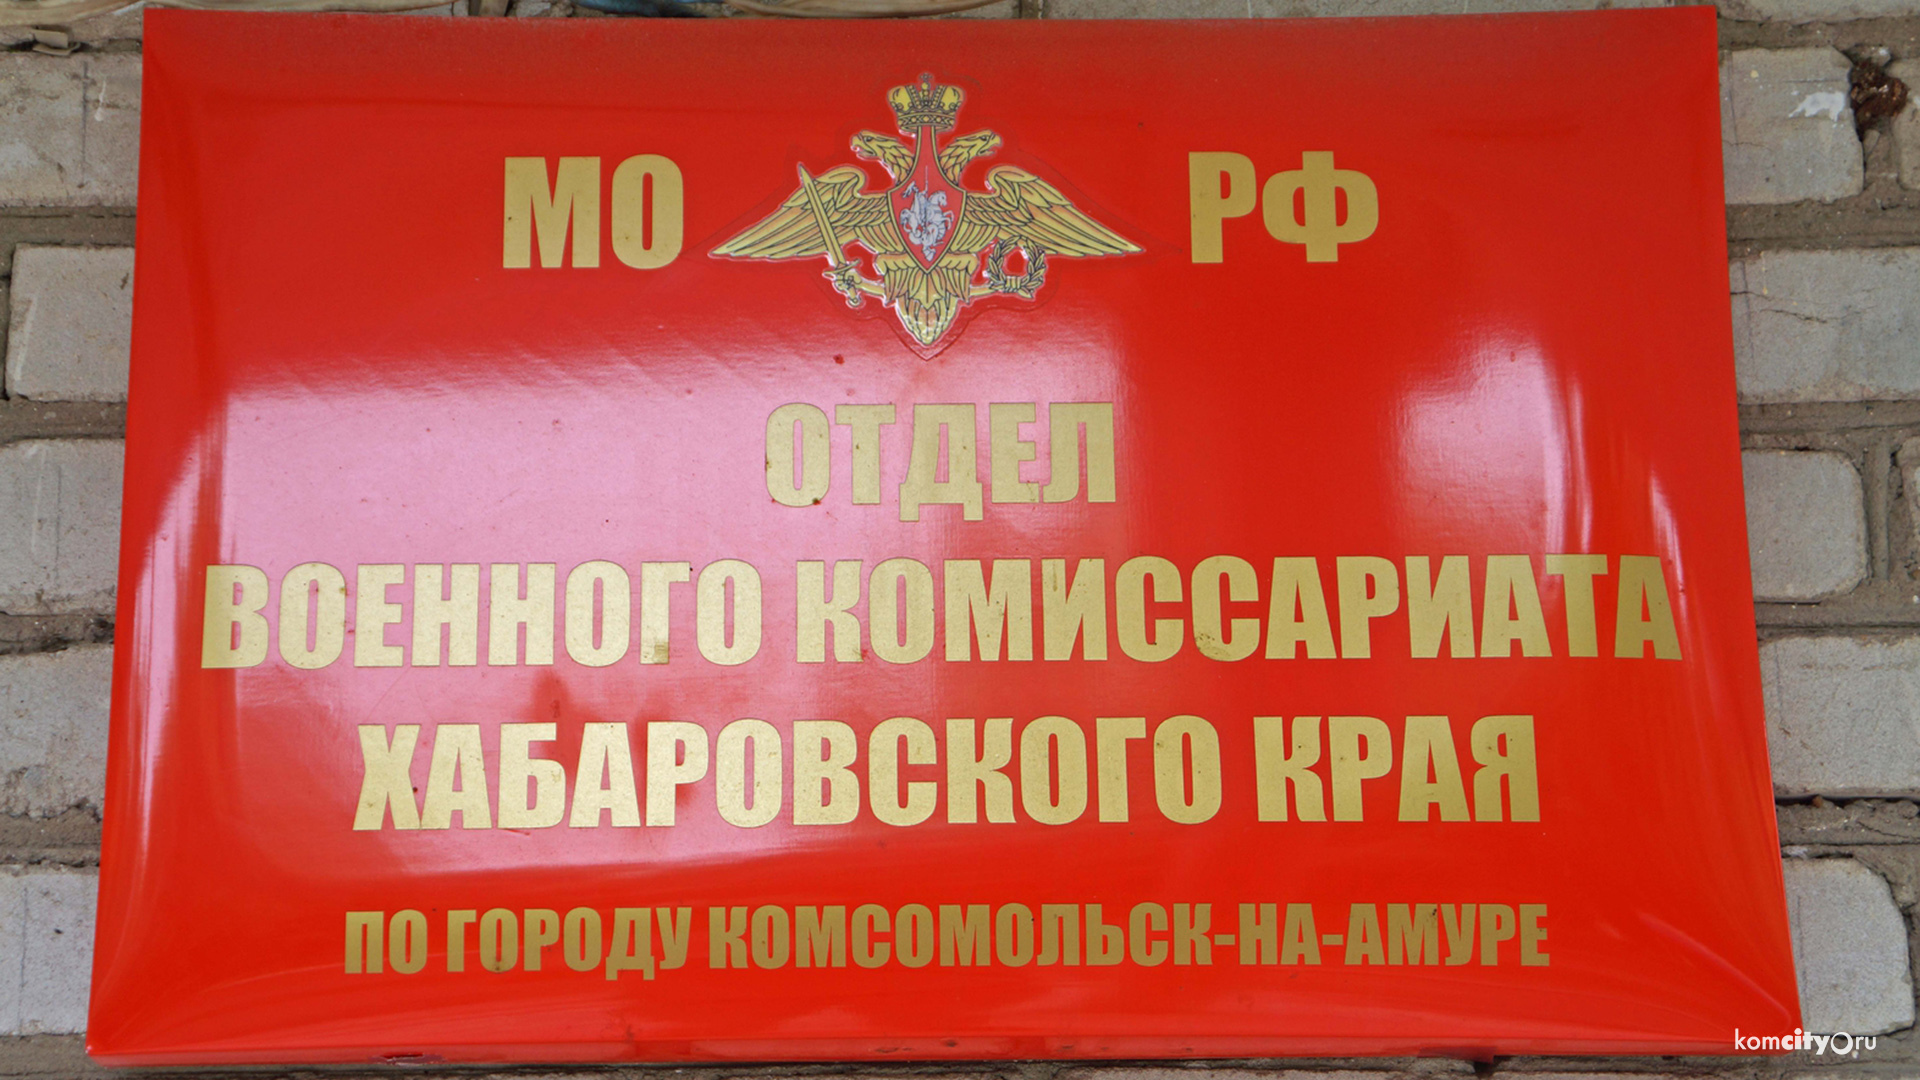 «Миша, у нас отмена!» — Минобороны назначило «отстранённого» военкома Хабаровского края в соседний регион